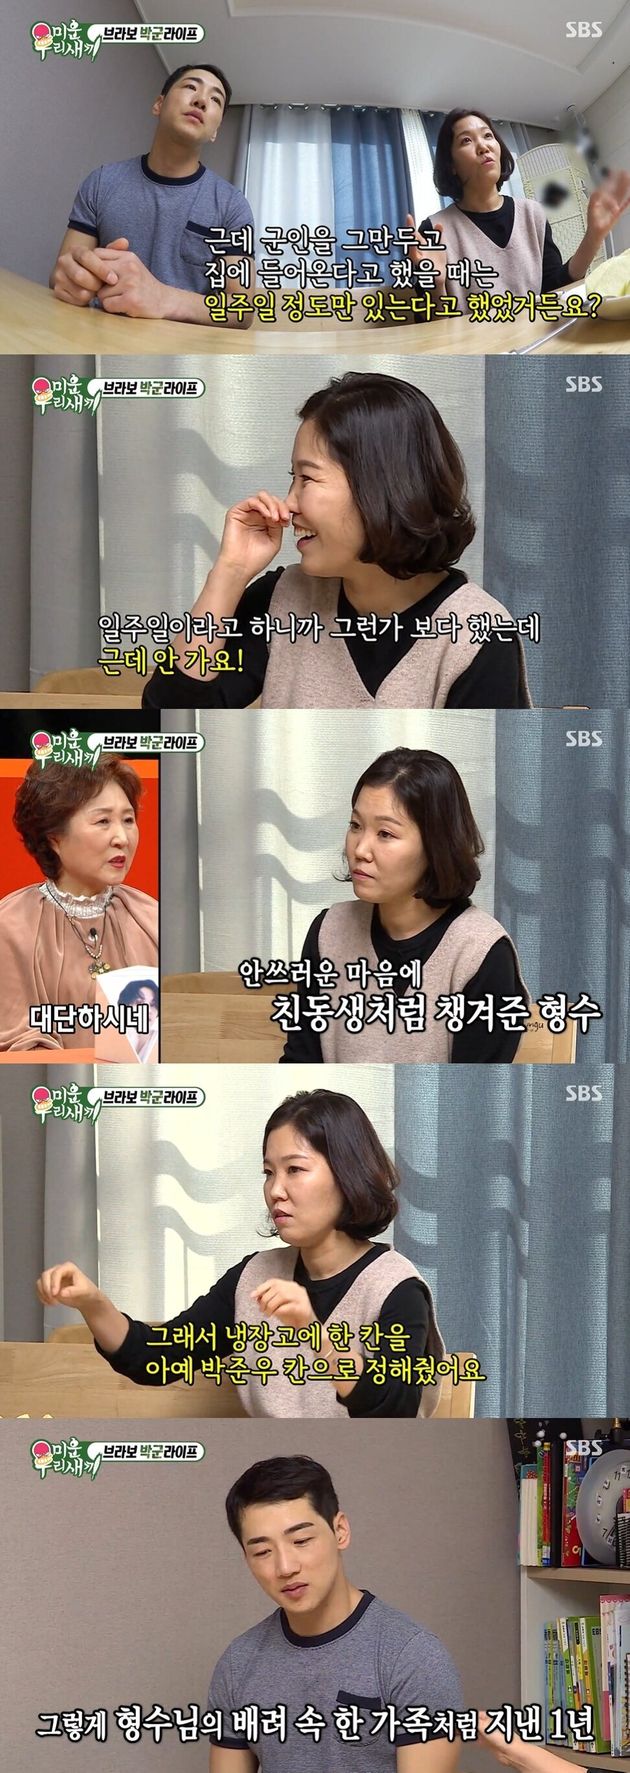 SBS 예능프로그램 ‘미운 우리 새끼’ 방송 캡처